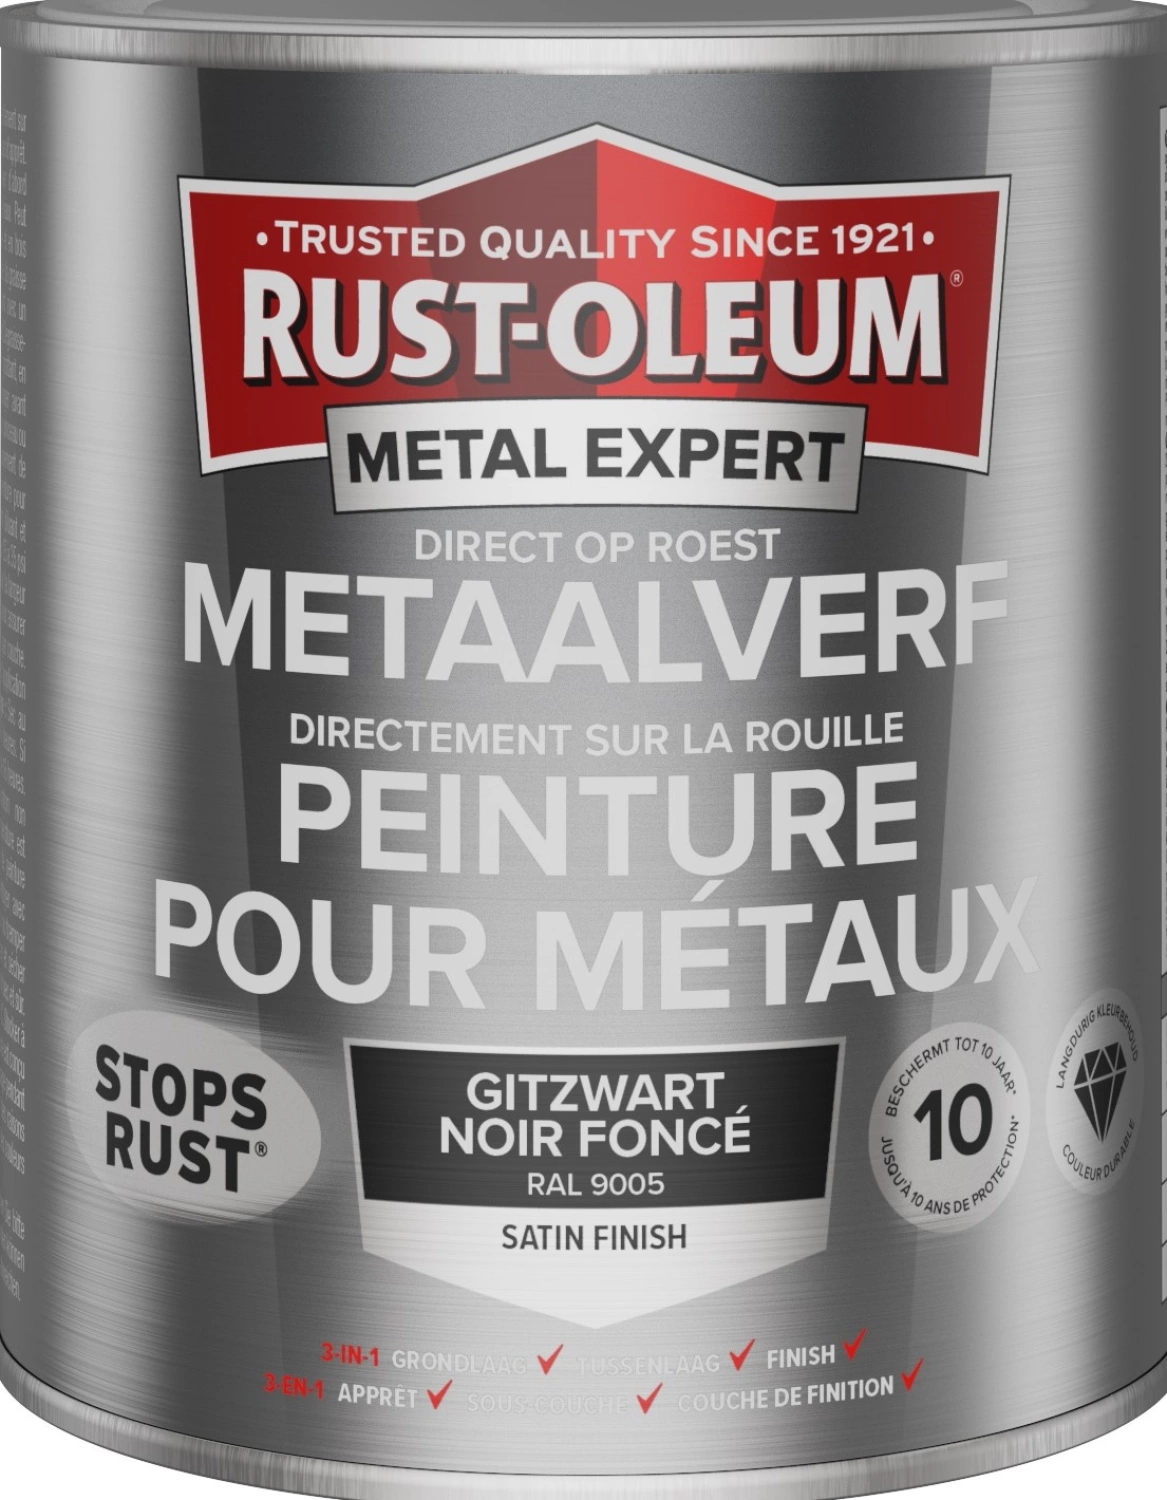 Rust-Oleum MetalExpert Zijdeglans - RAL 9005 gitzwart - 0,75L-image